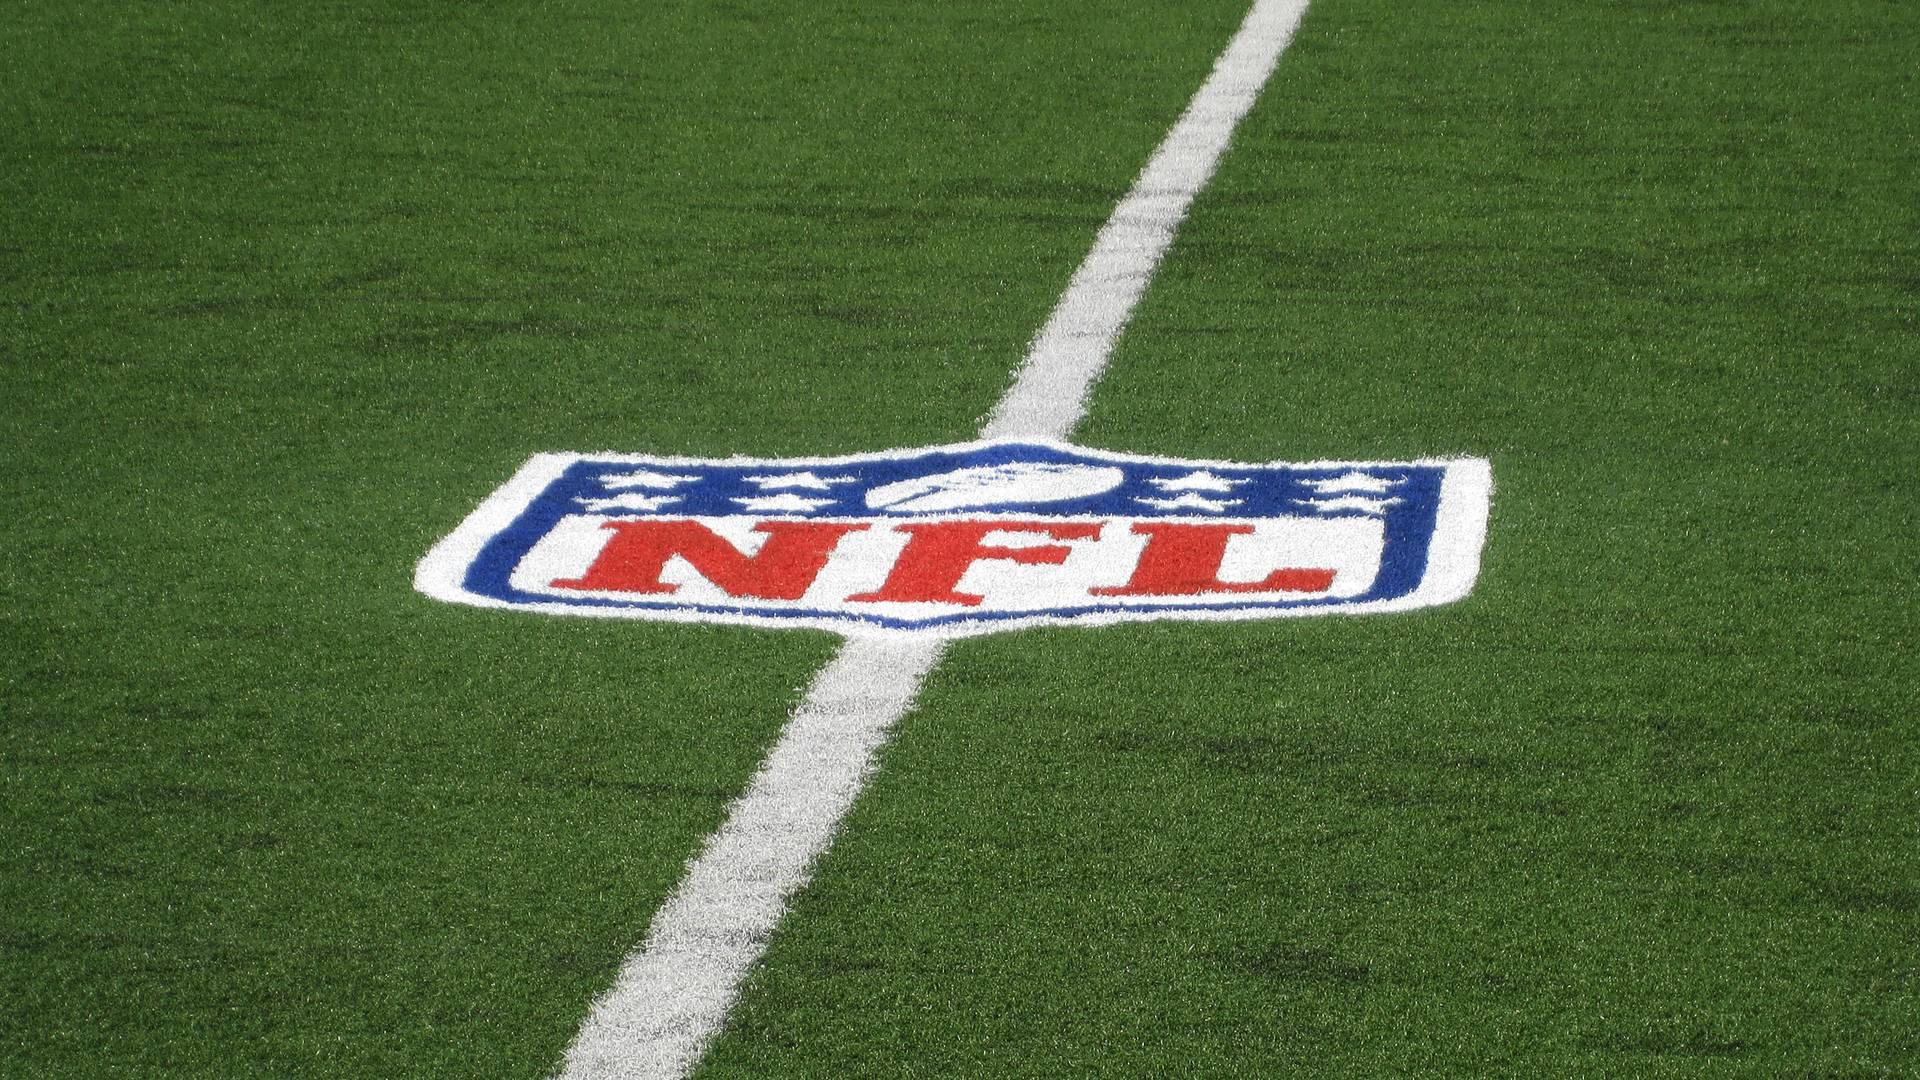 NFL Fodbold Logo på Field Wallpaper Wallpaper